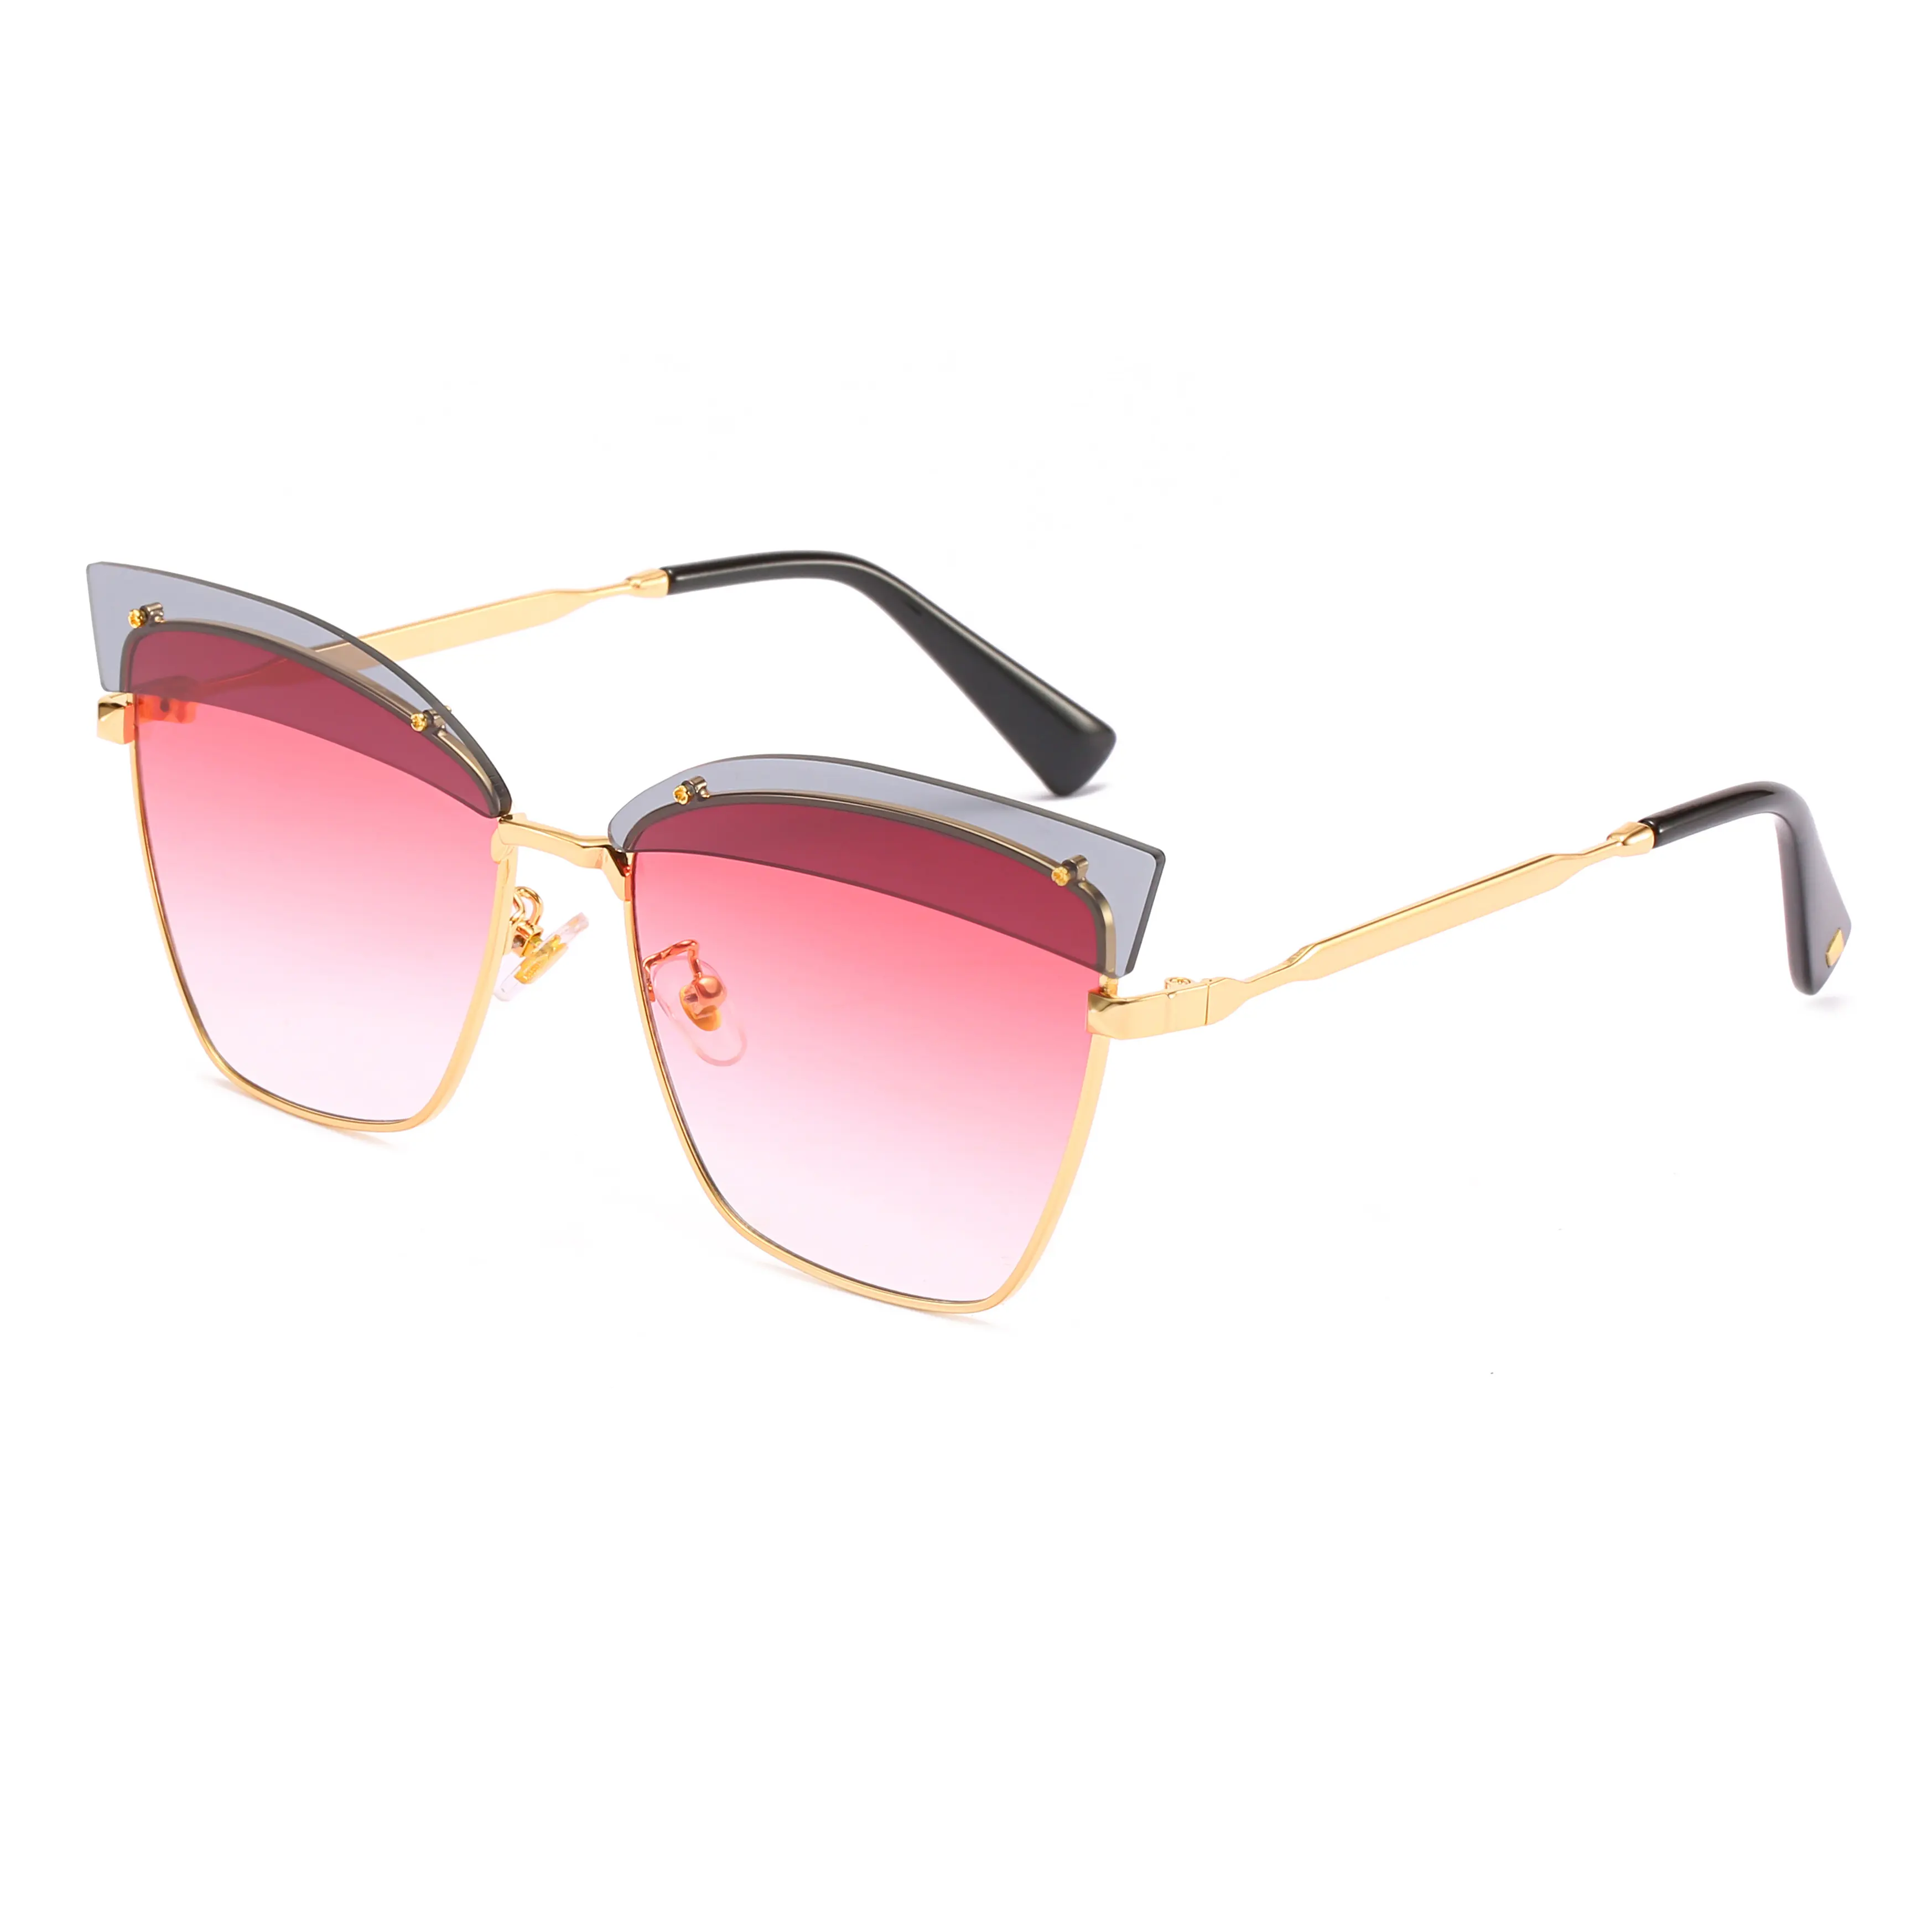 2020 солнцезащитные очки Banei, Новые поступления, женские Уникальные Винтажные Солнцезащитные очки с логотипом под заказ, роскошные мужские металлические солнцезащитные очки с УФ-400 градиентными оттенками